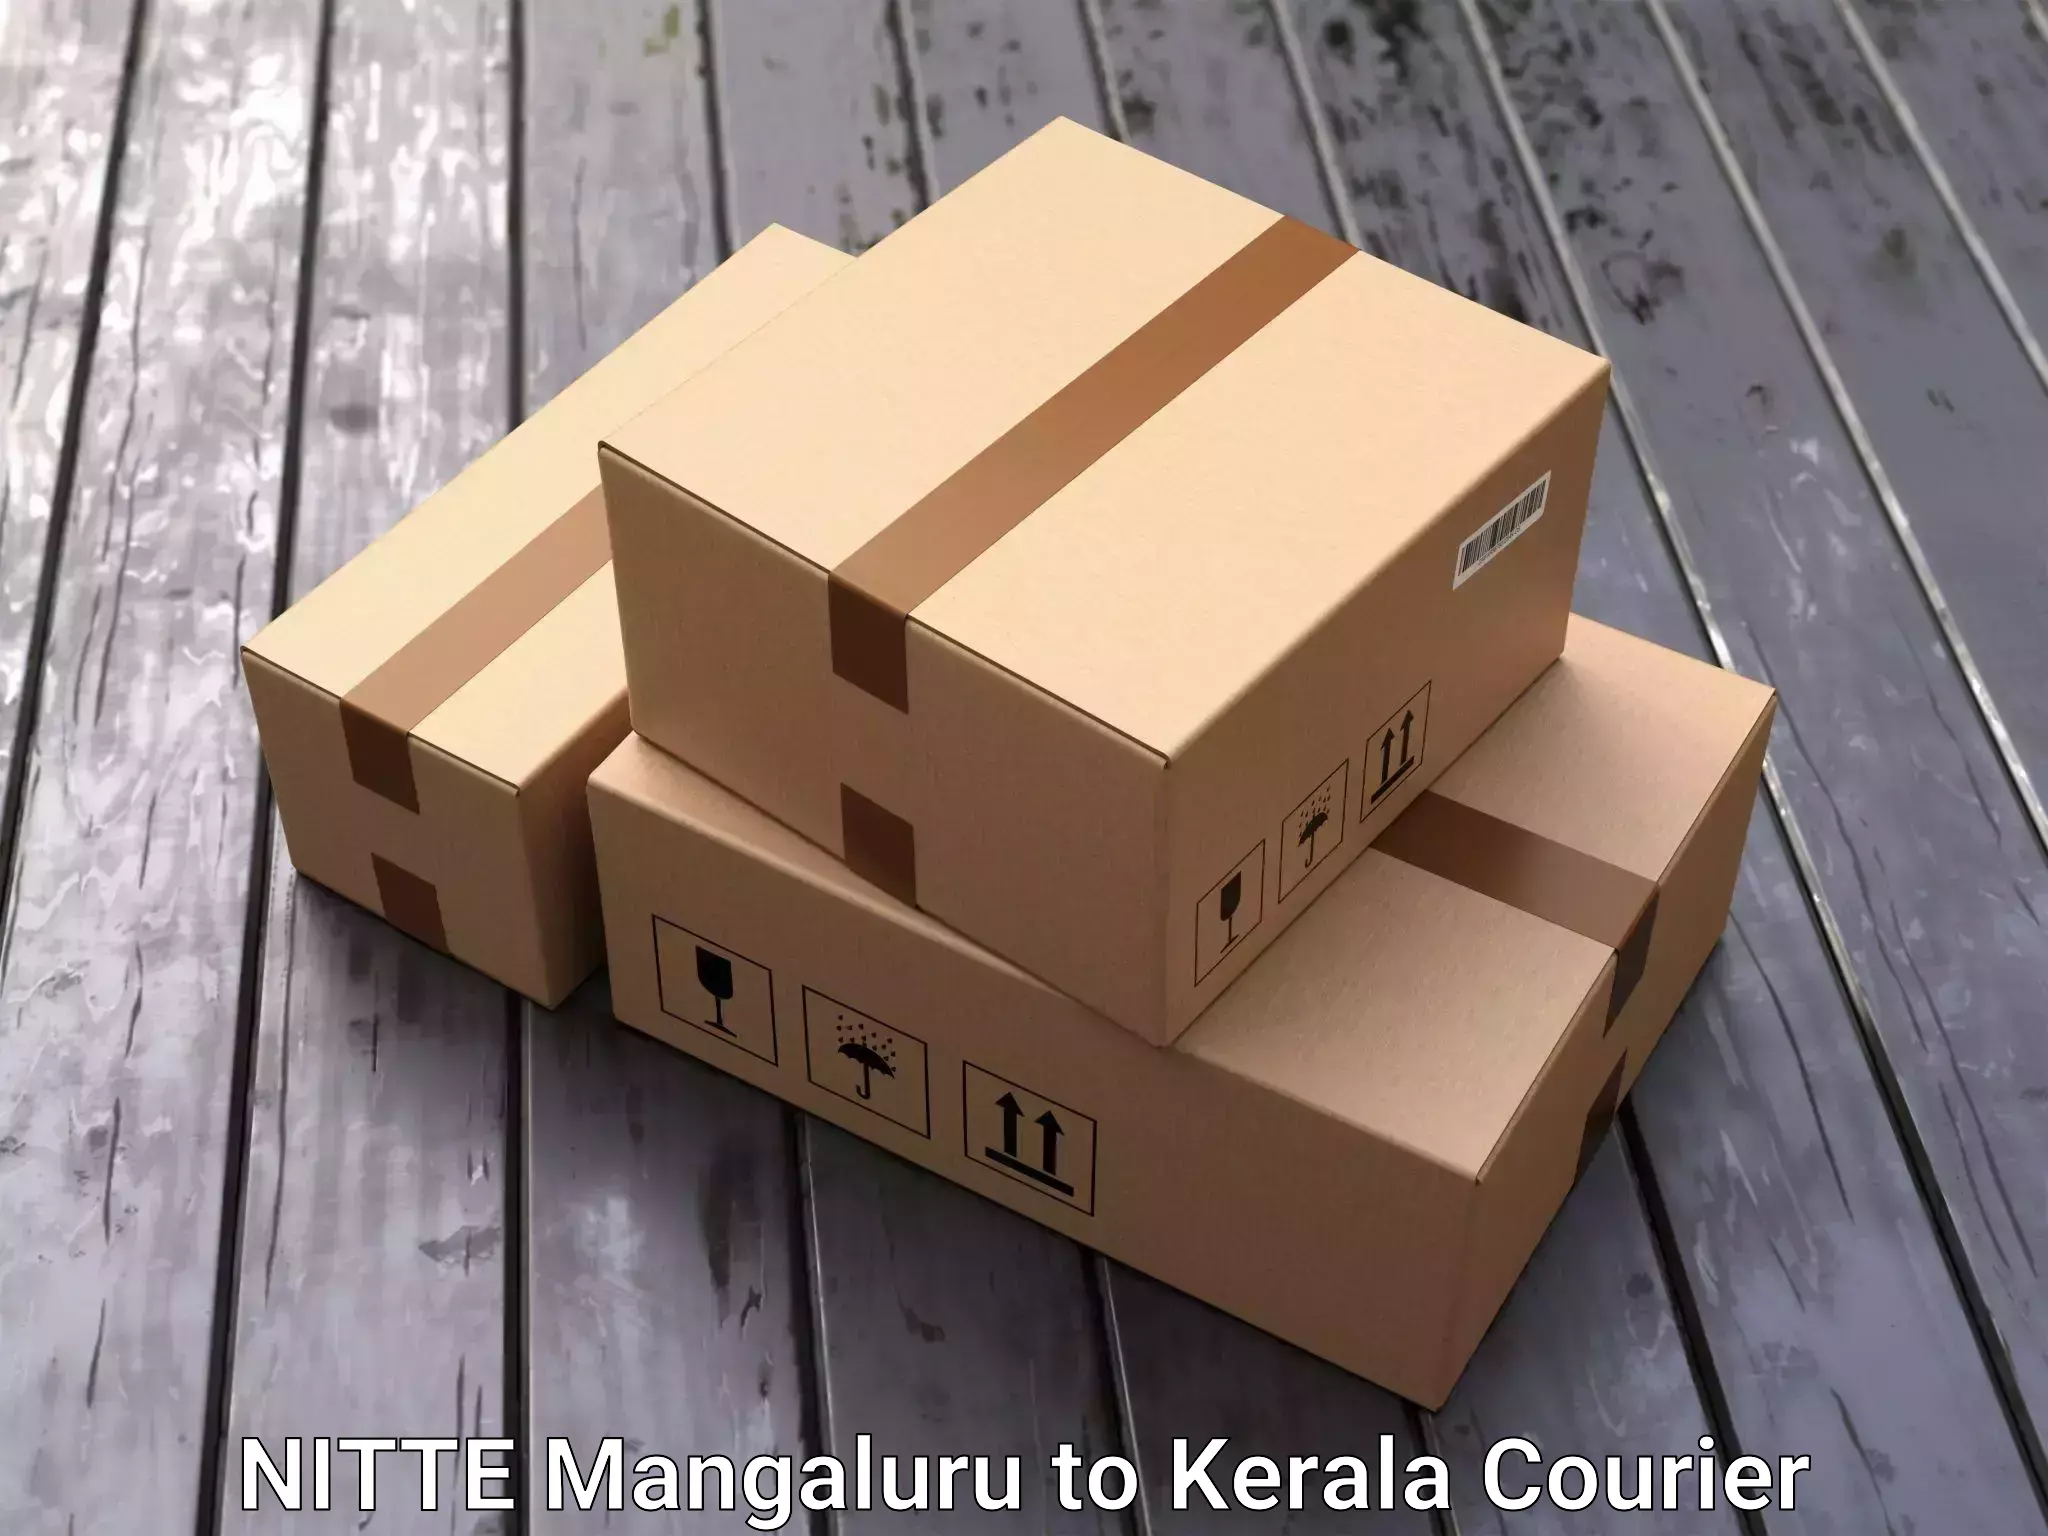 Seamless moving process NITTE Mangaluru to Kerala